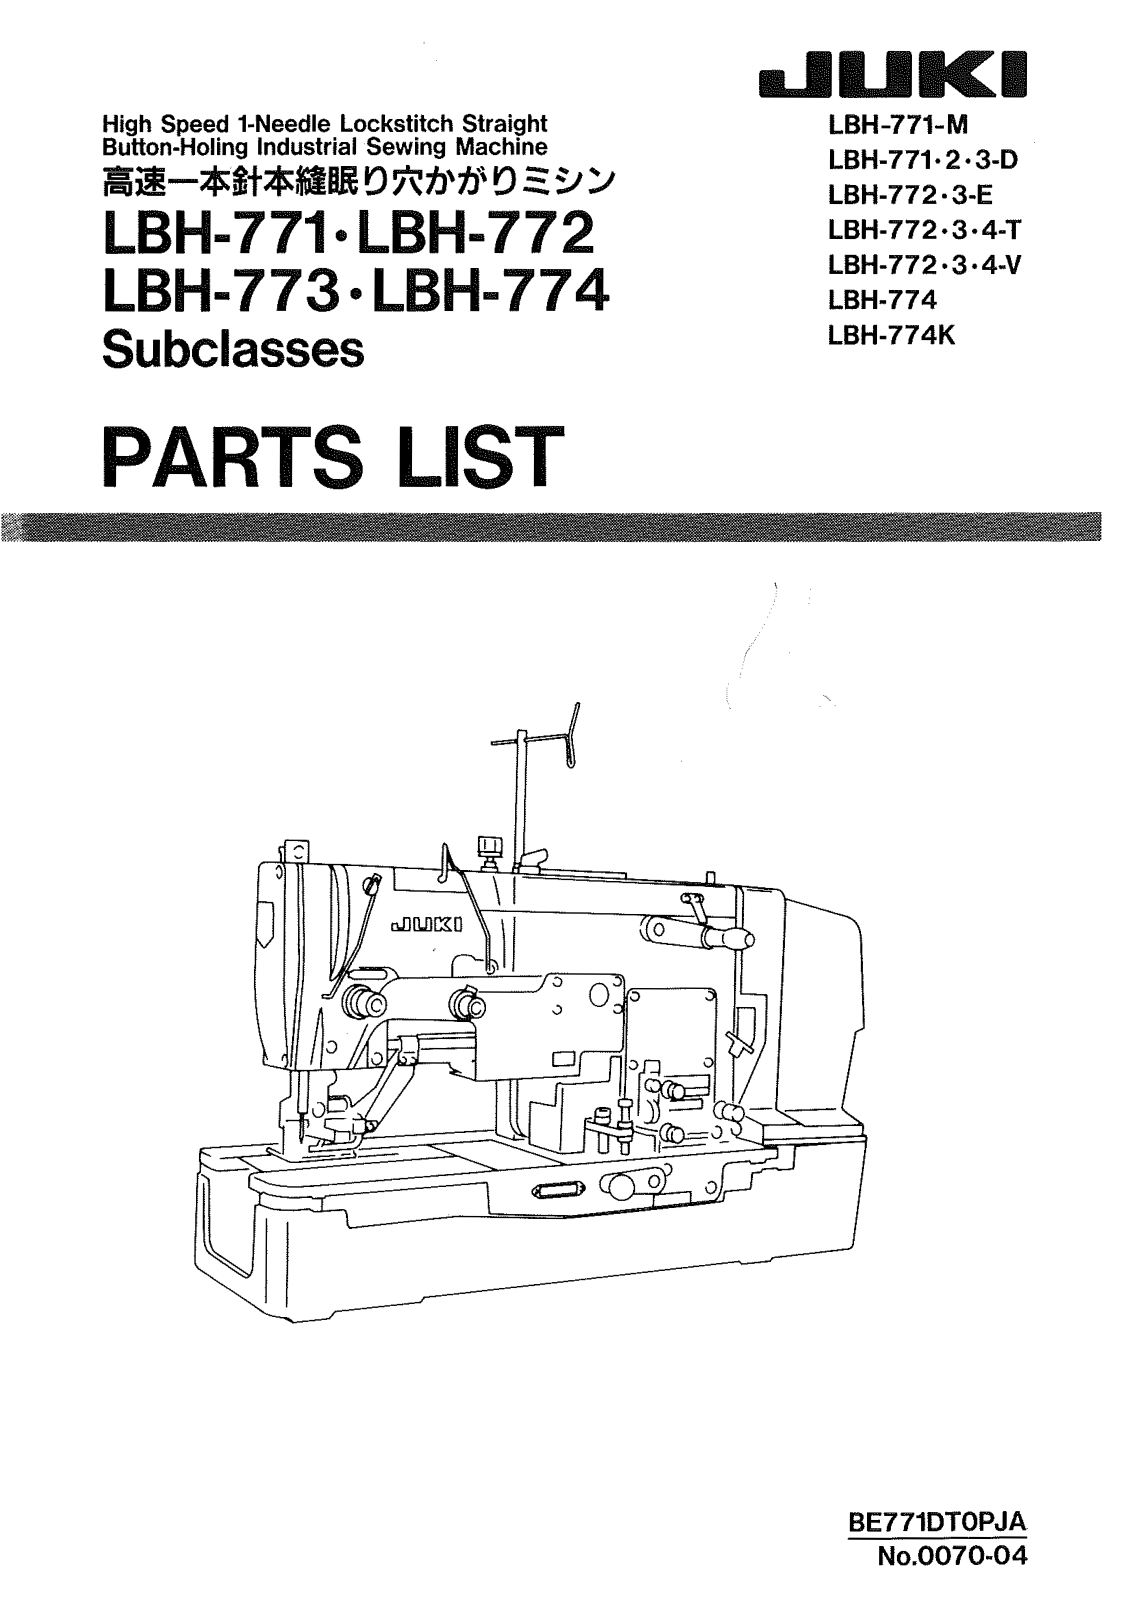 Juki LBH-771-M, LBH-771.2.3-D, LBH-772.3-E, LBH-772.3.4-E, LBH-772.3.4-V Parts List